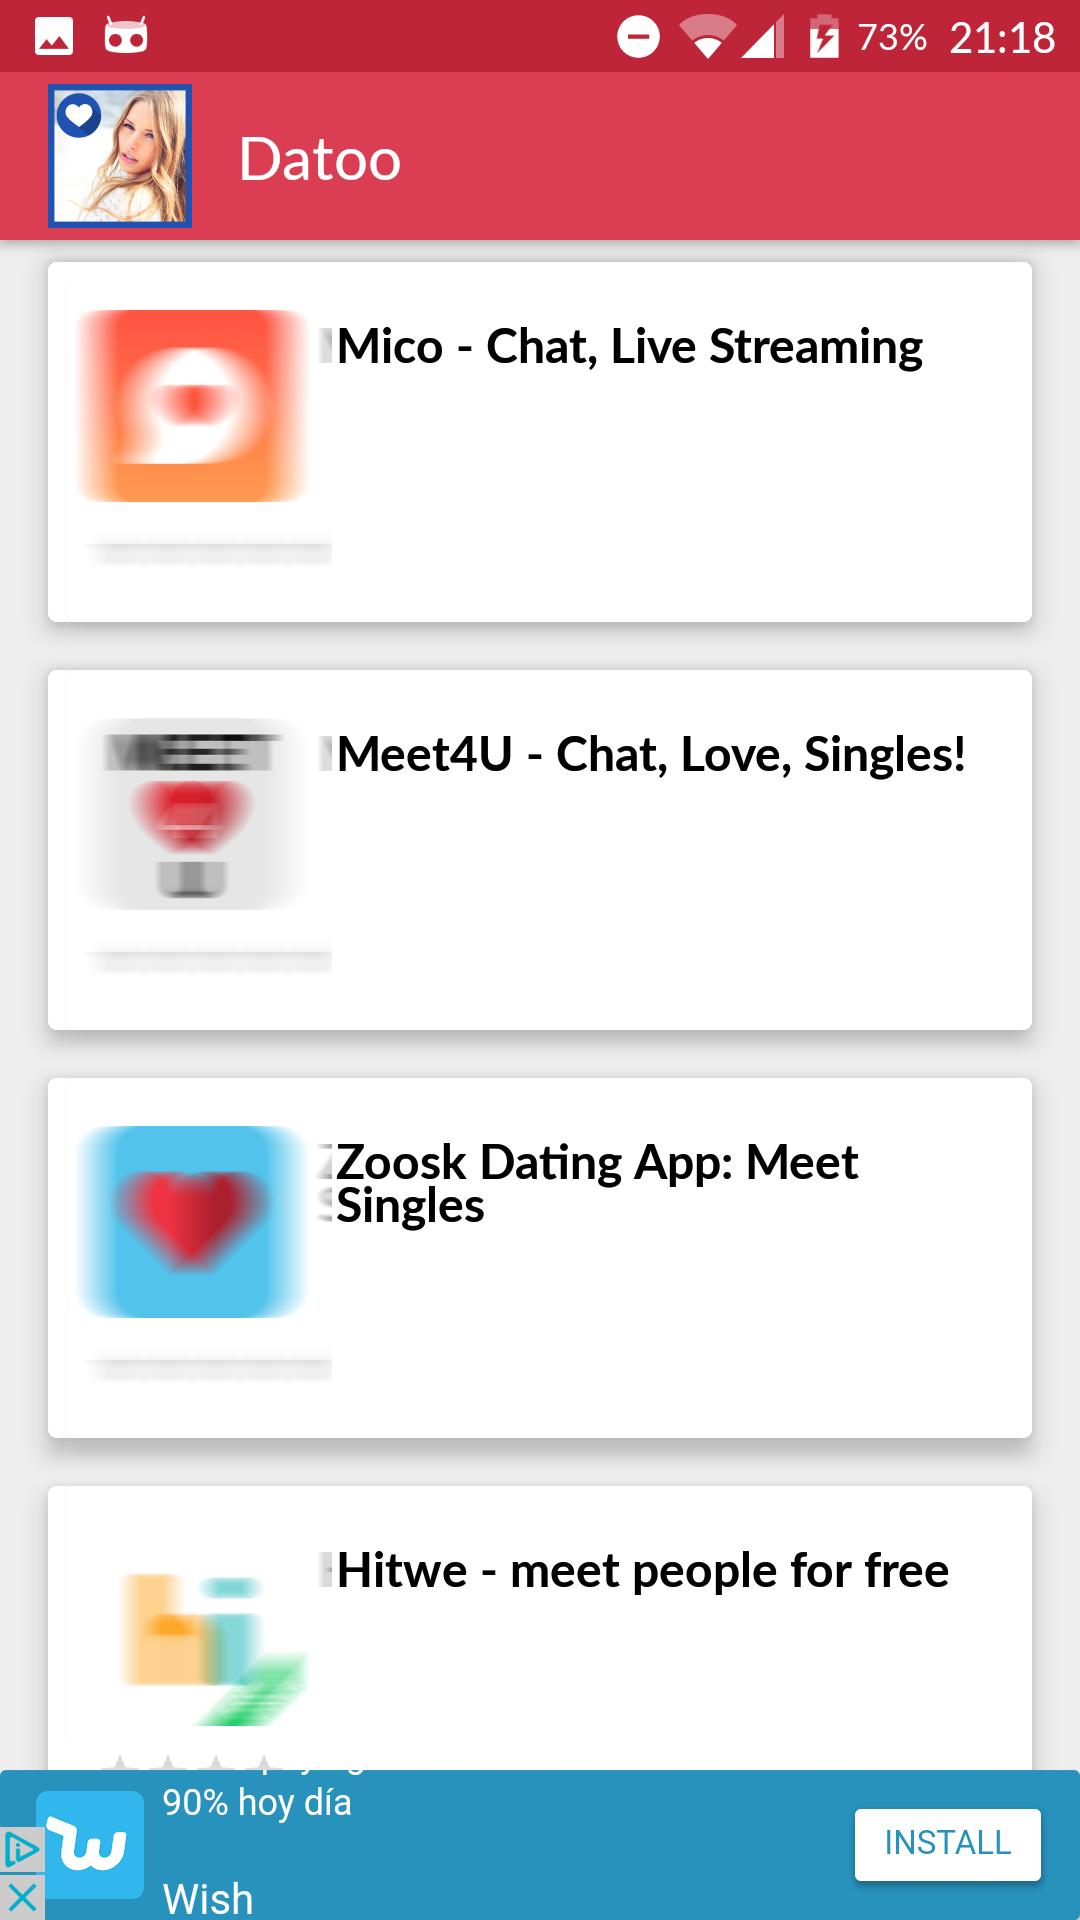 welche dating app ist die beste kostenlos